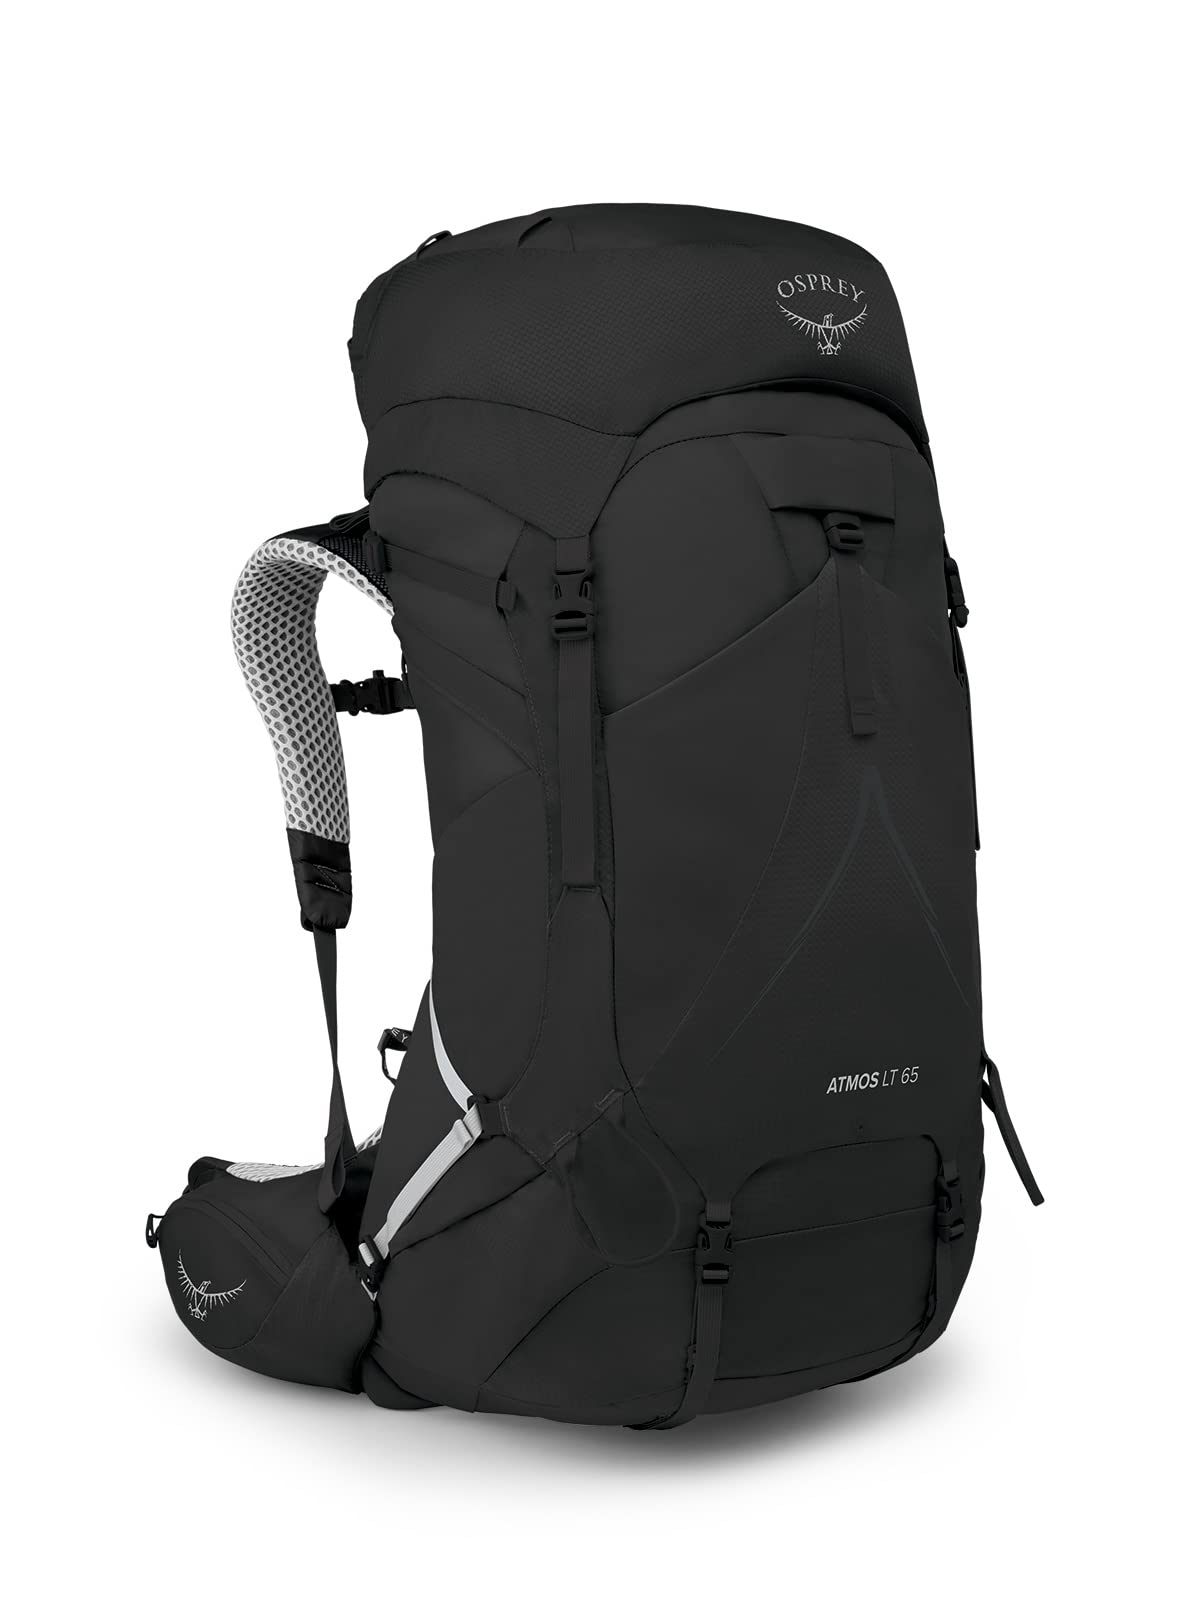 Osprey Atmos AG LT 65L Men's Hiking Backpack, Black, L/XL